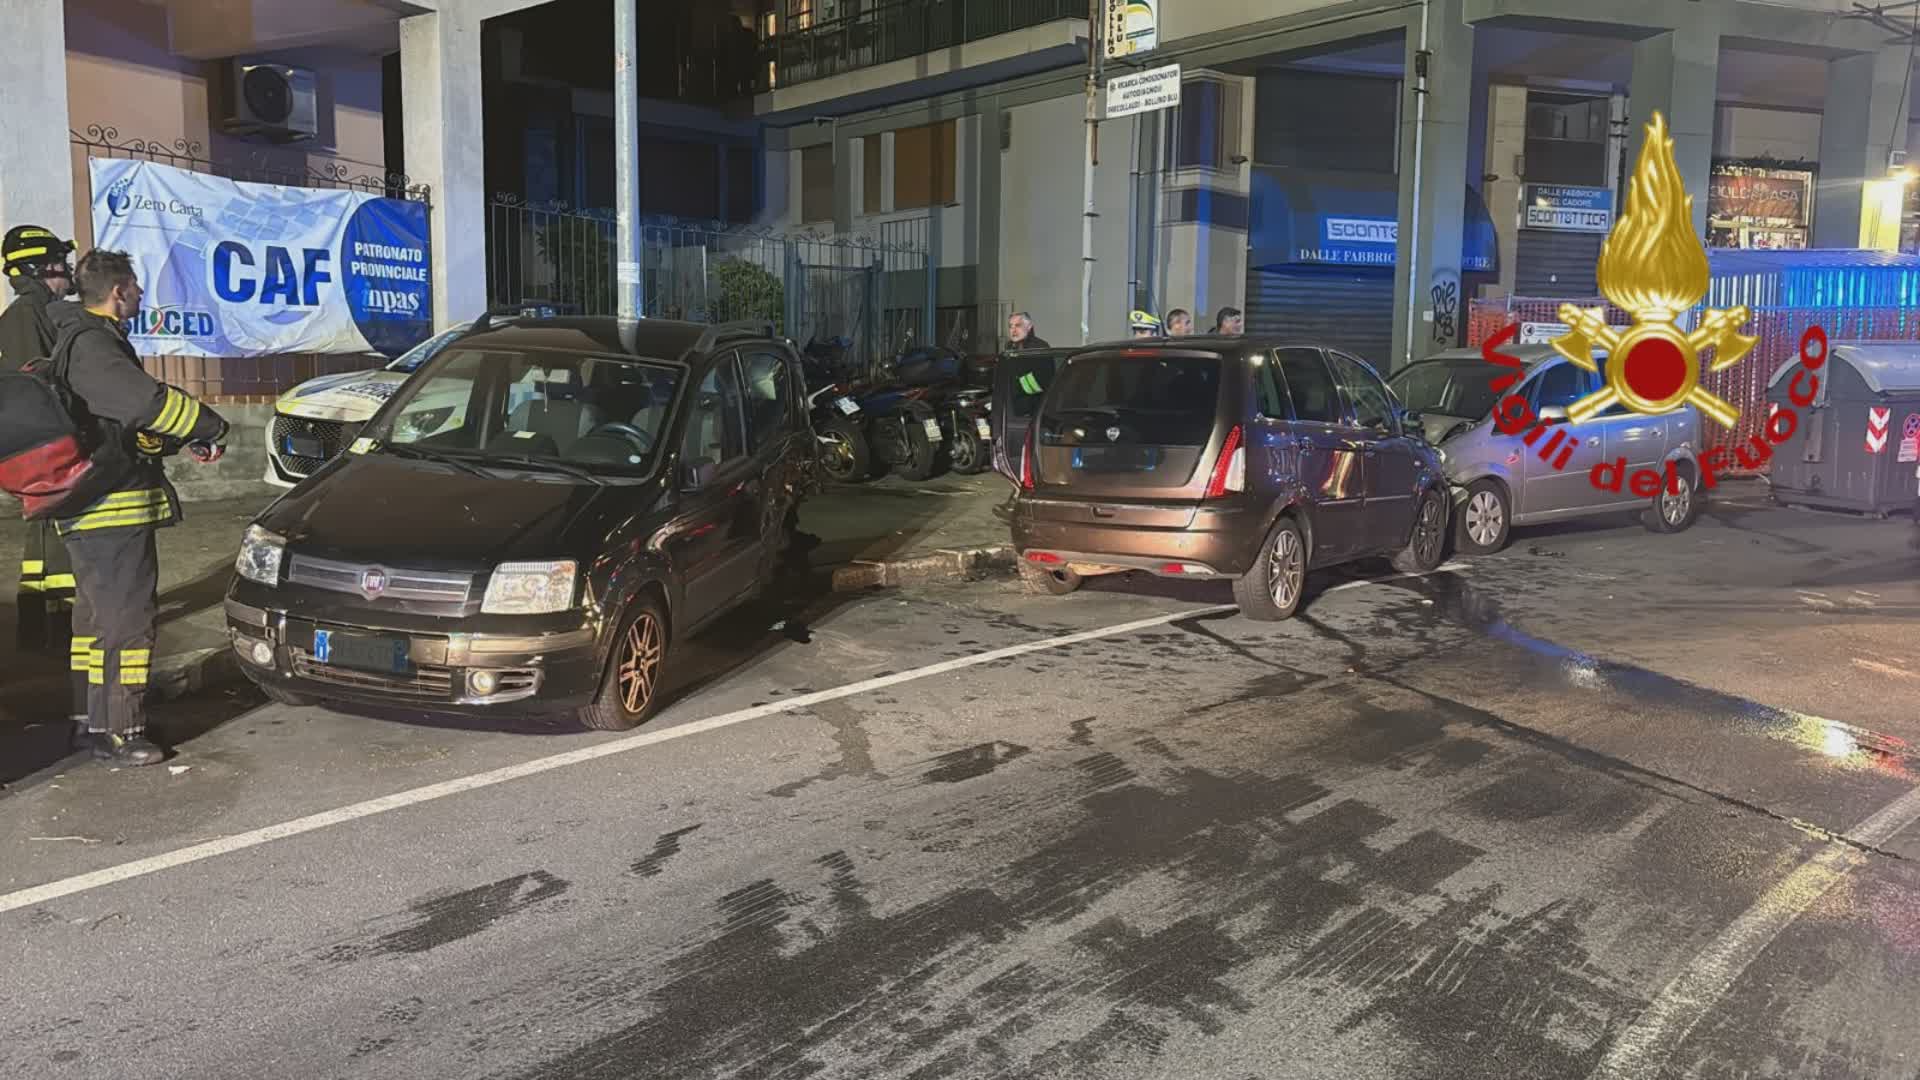 Genova, incidente in via Napoli: auto sbanda e colpisce numerosi veicoli parcheggiati